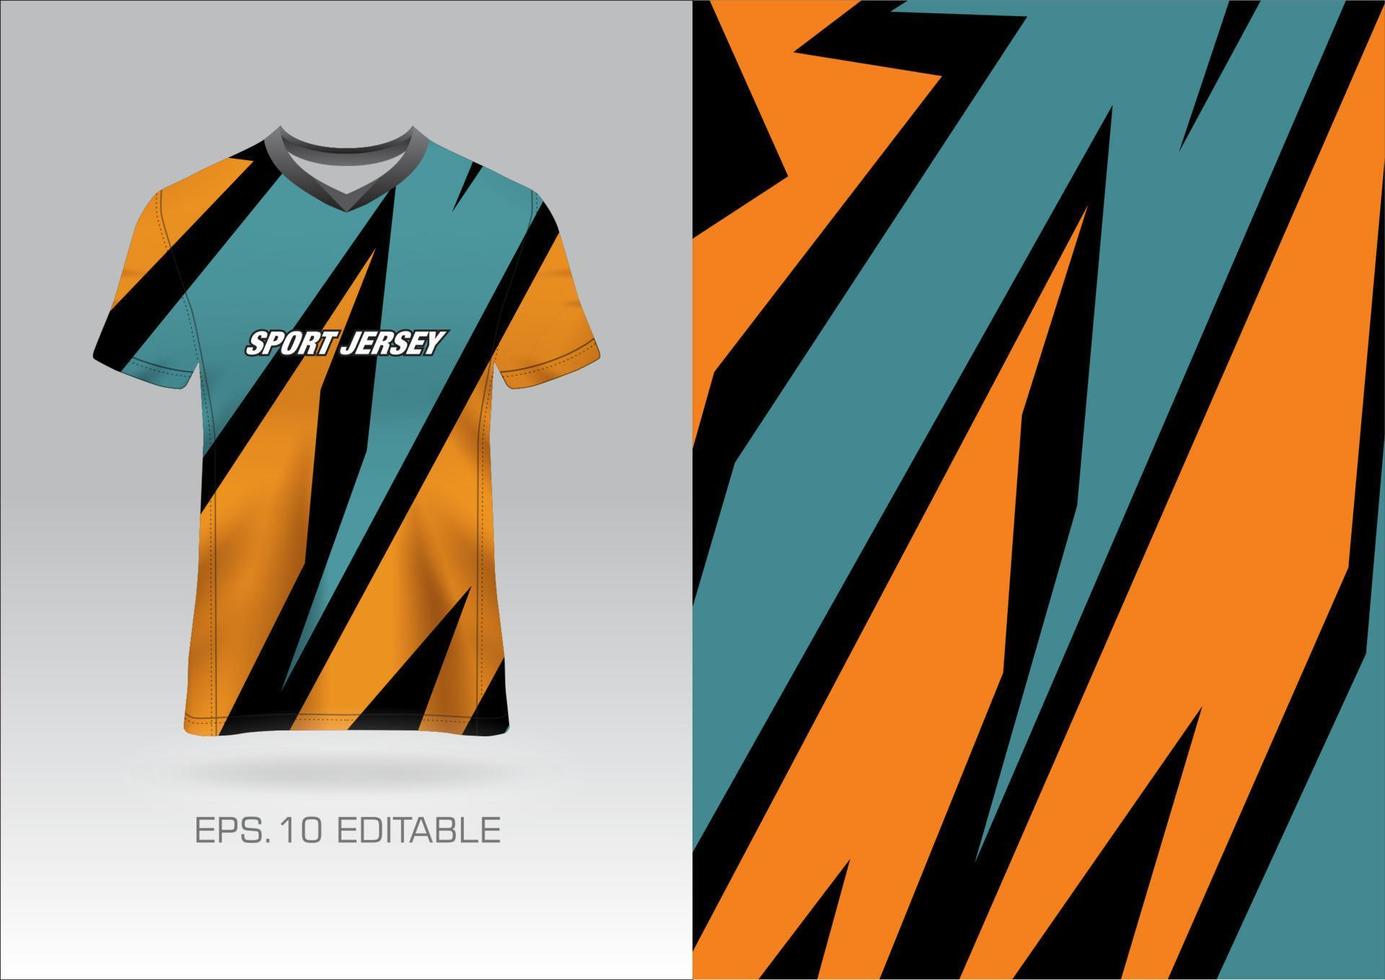 tyg textil- design för sport t-shirt, fotboll jersey attrapp för fotboll klubb. enhetlig främre se. vektor